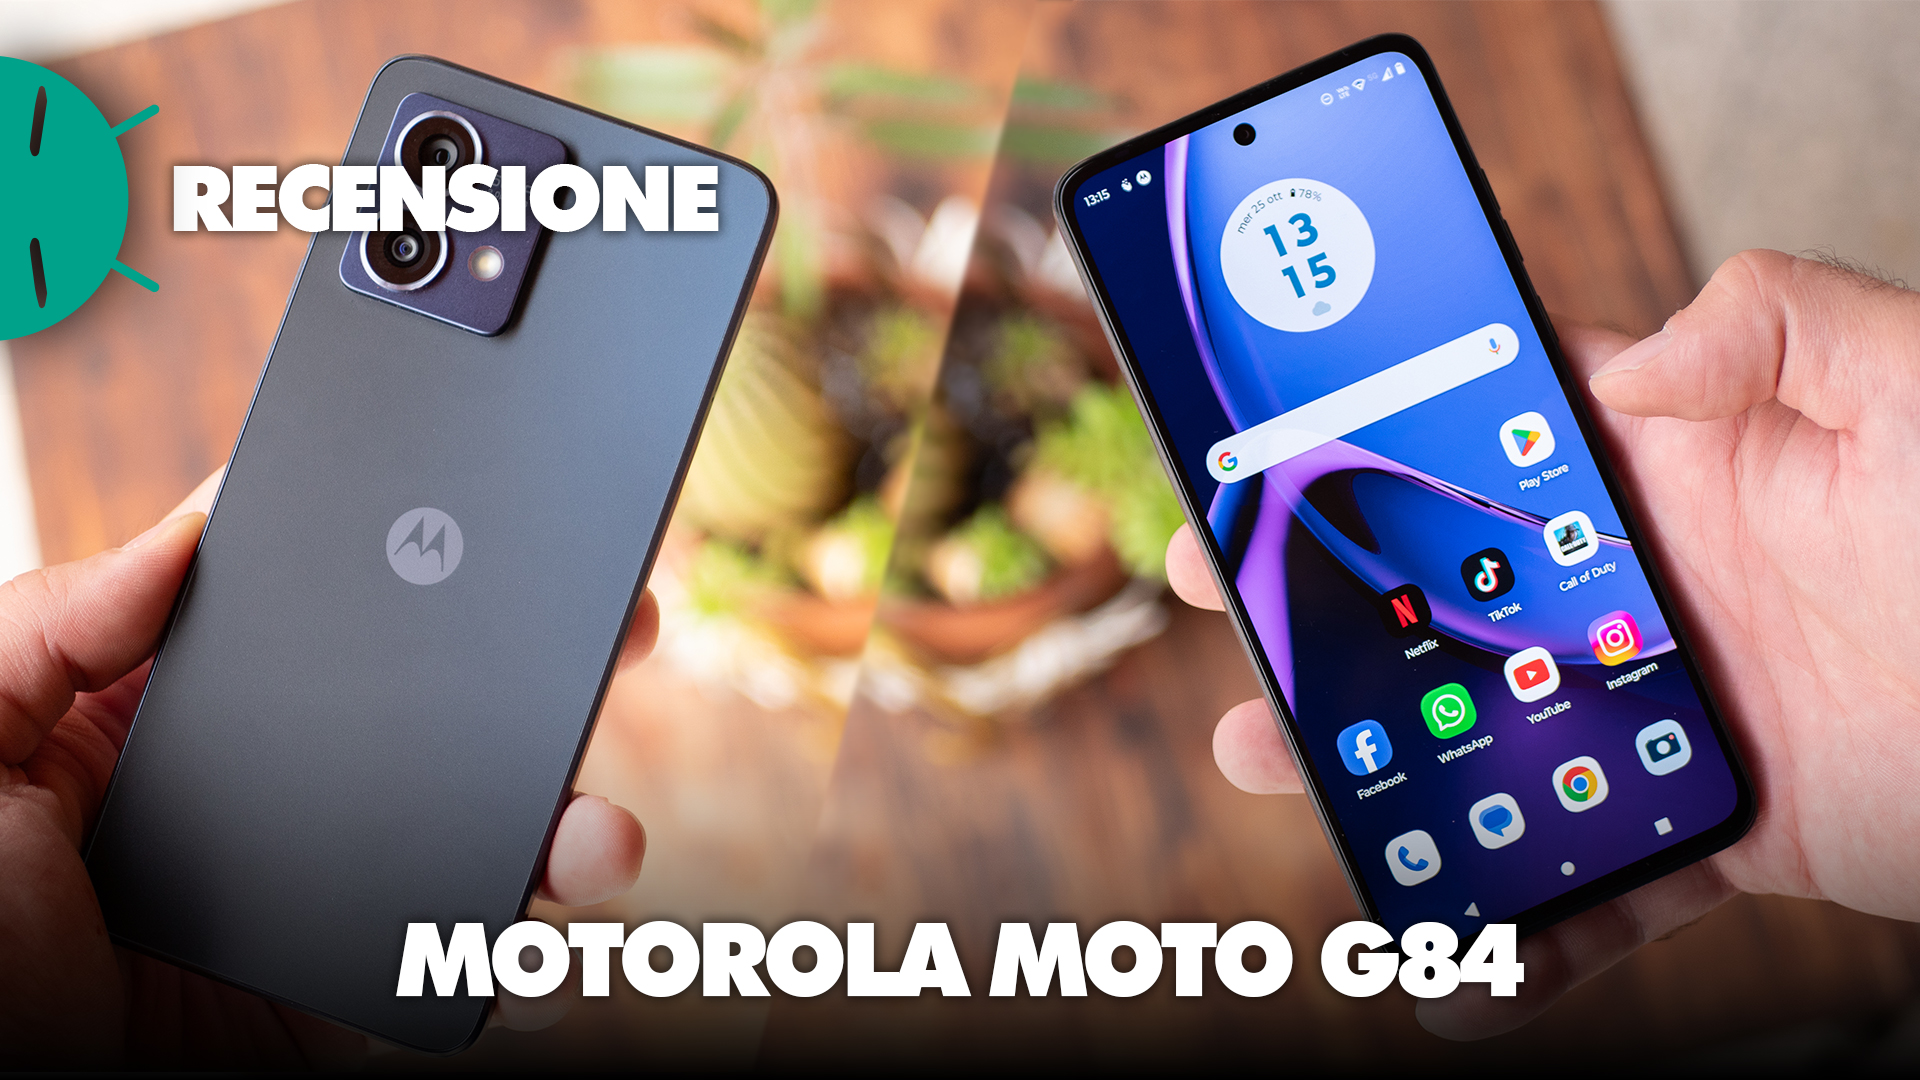 Revisión del Motorola G84: ¡el mejor en esta gama! - GizChina.it